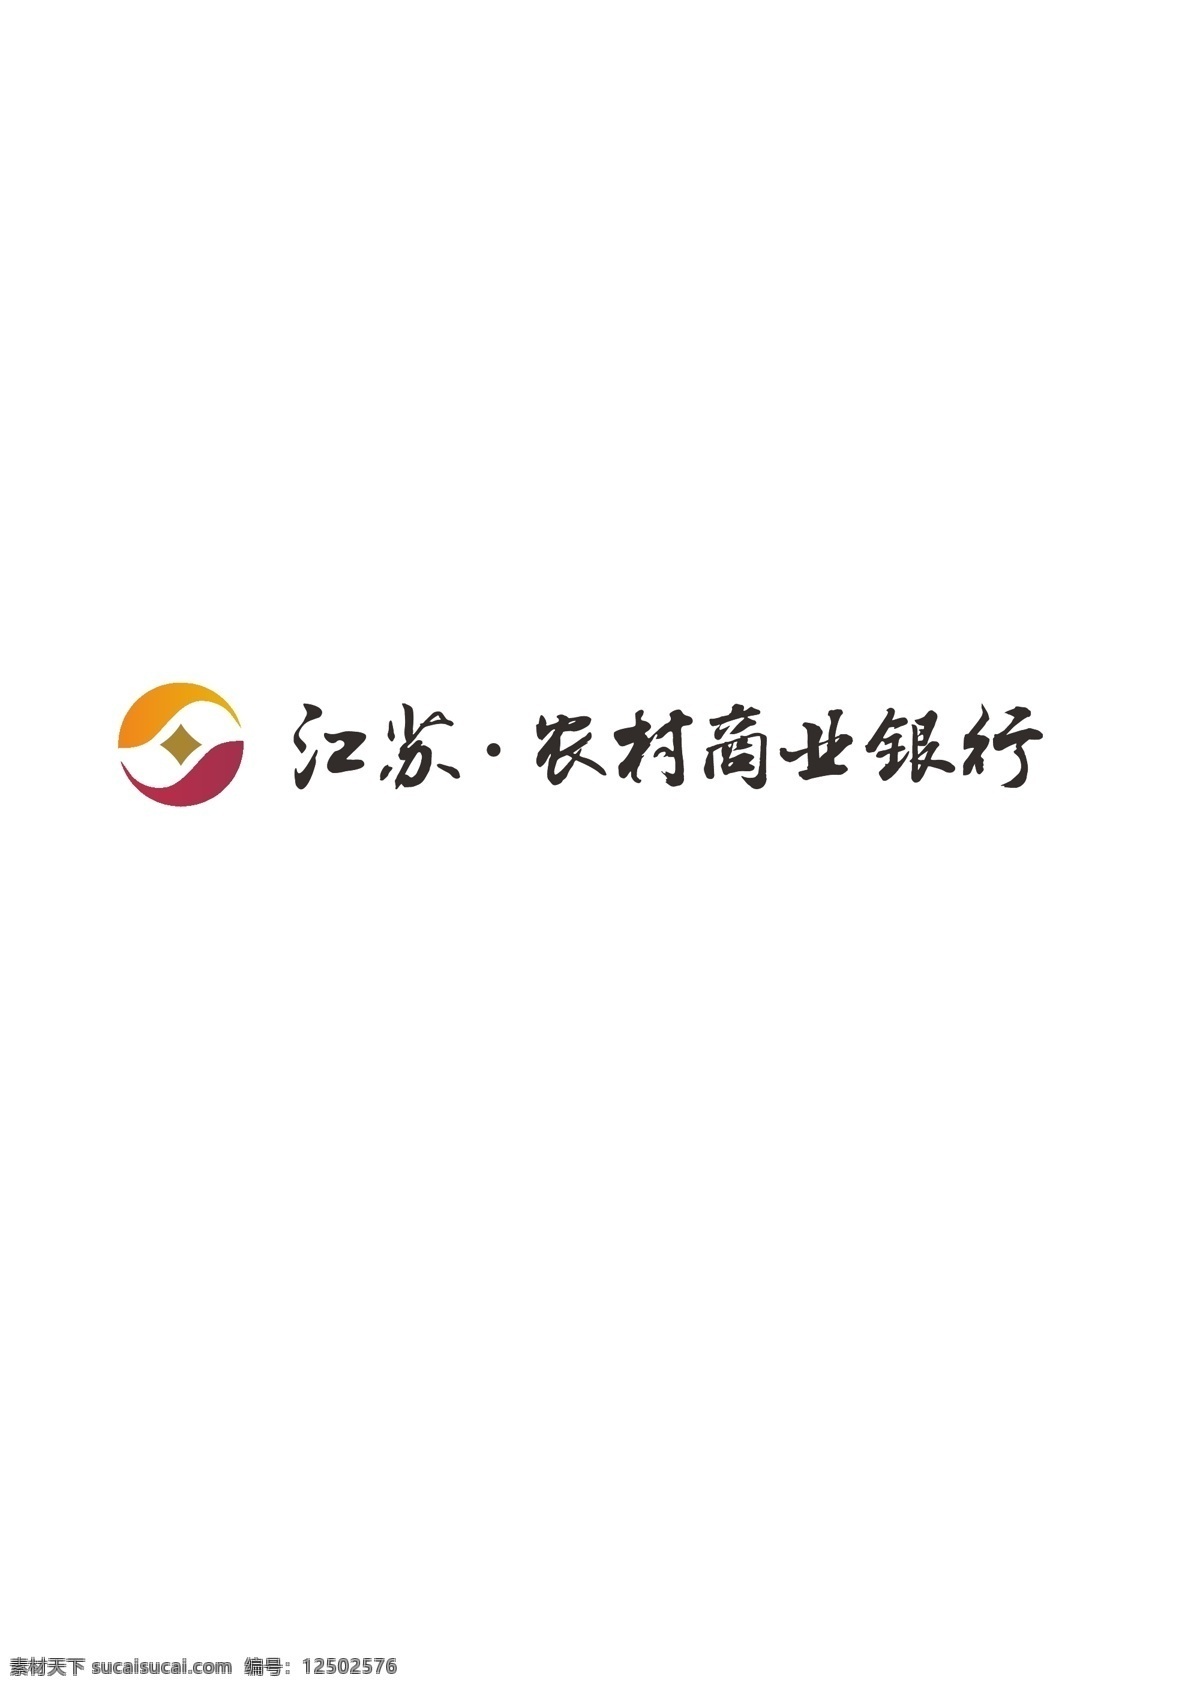 江苏 农村 商业银行 logo 江苏农商银行 银行logo 银行标志 logo下载 标志下载 logo设计